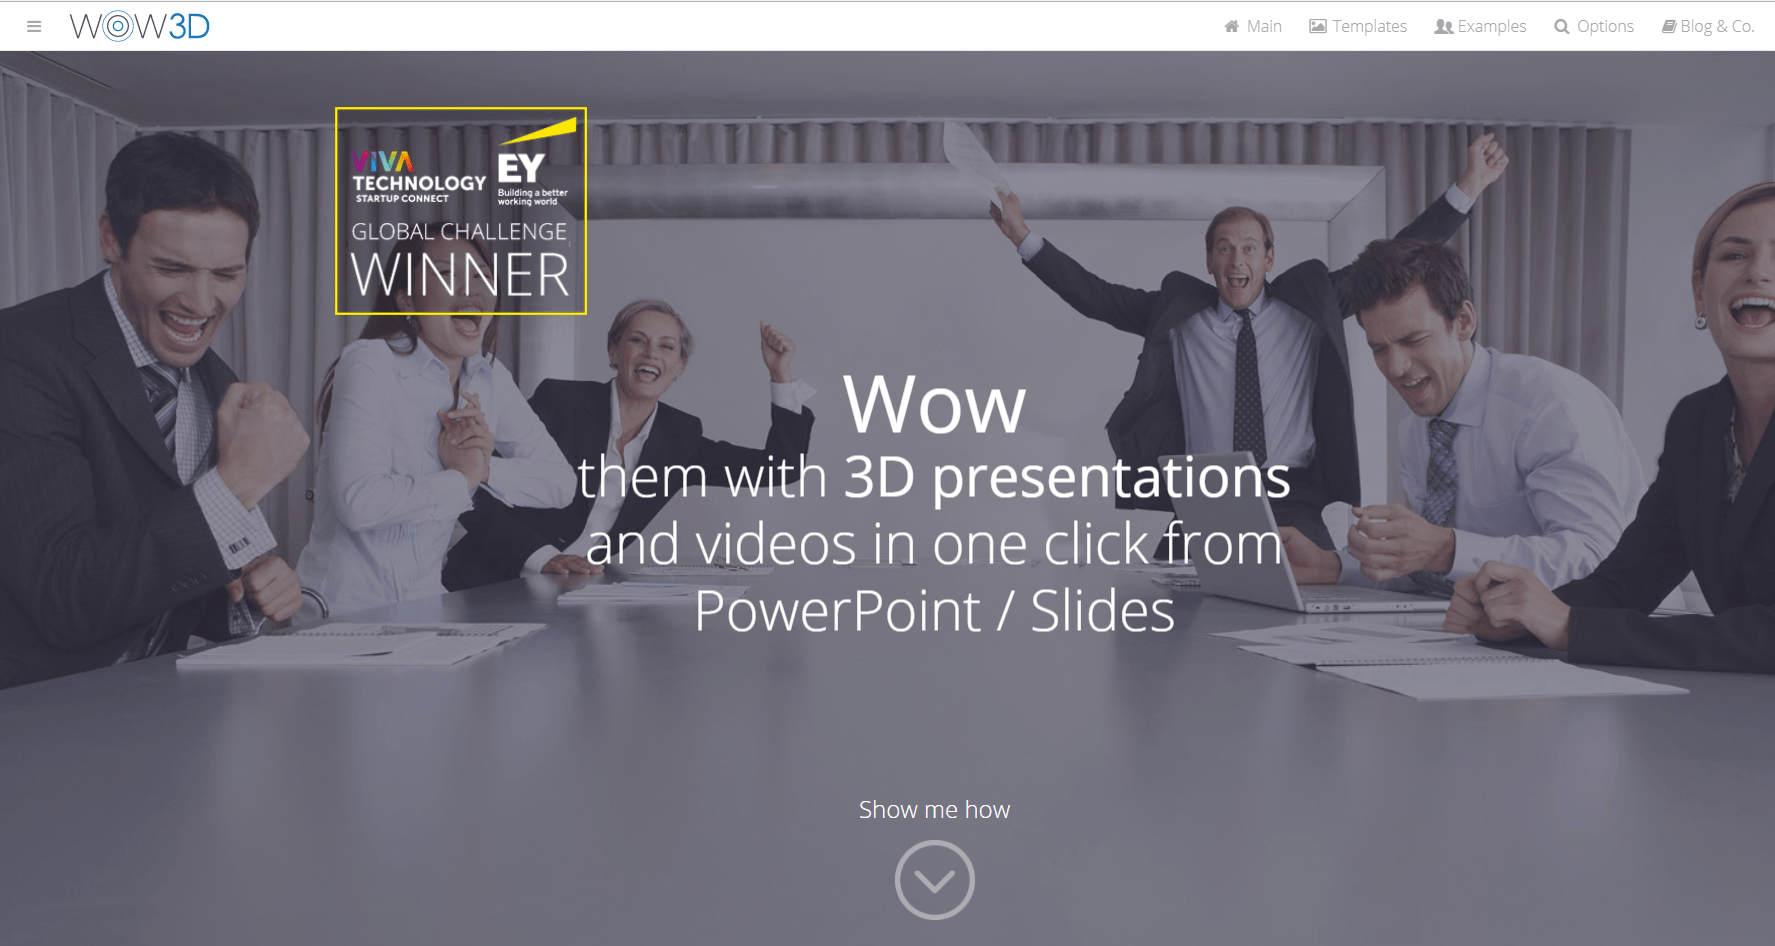 Nâng cao khả năng sáng tạo của bản trình chiếu PowerPoint của bạn với tiện ích bổ sung mới nhất! Hình ảnh liên quan đến từ khóa sẽ cho bạn thấy được sức mạnh của công cụ này trong việc tạo ra những bài trình chiếu thú vị và đa dạng hơn.